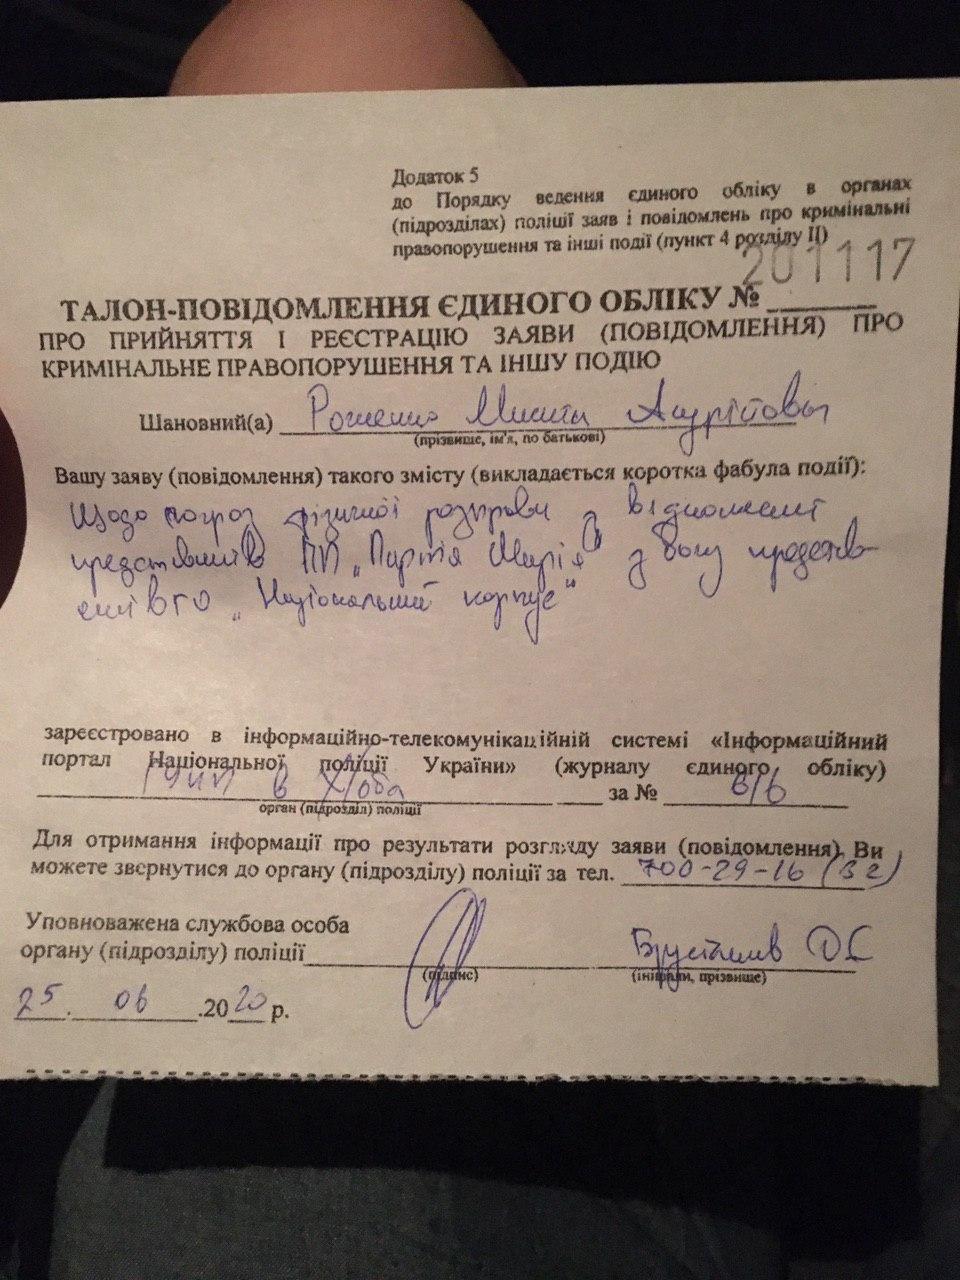 Вчера вечером Никита написал заявление в полицию по факту угроз со стороны представителей Нацкорпуса. Через пару часов его пытались убить